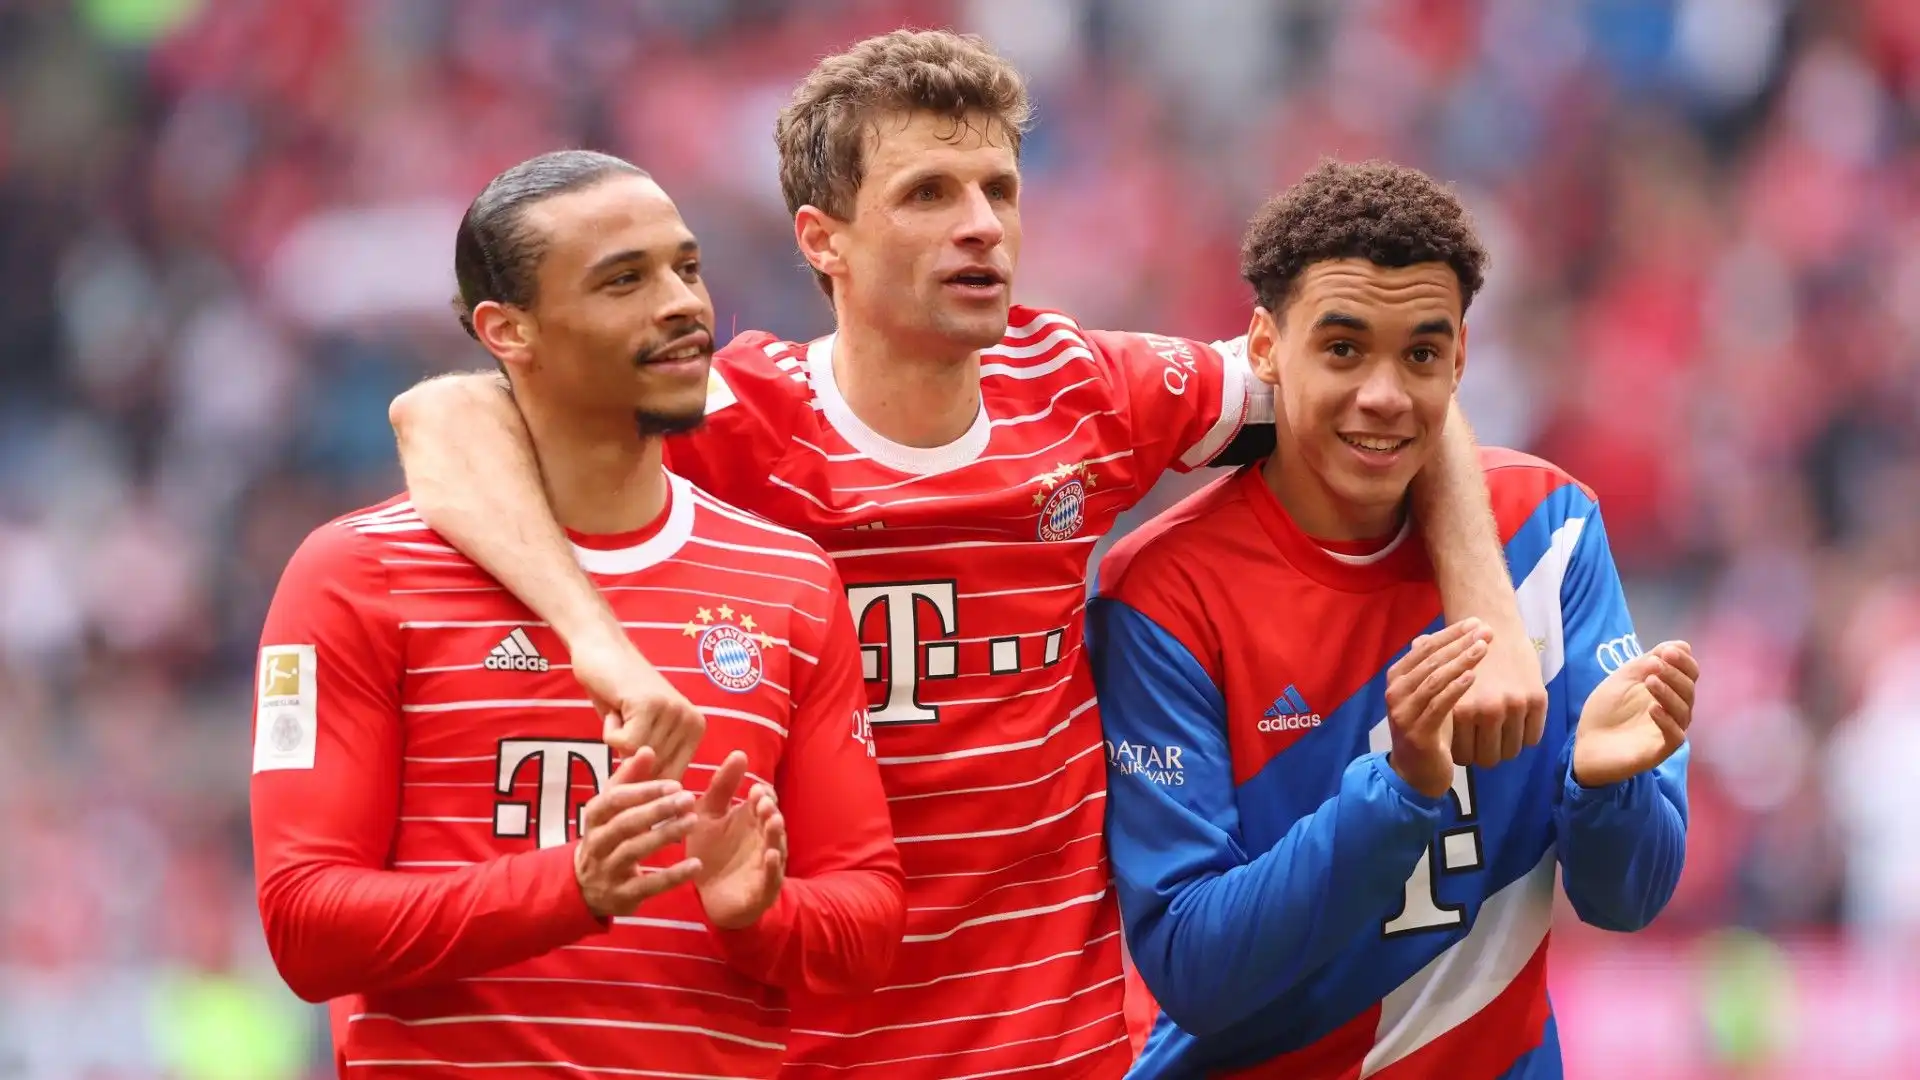 La gloriosa storia tra Leroy Sané e il Bayern Monaco è destinata a continuare